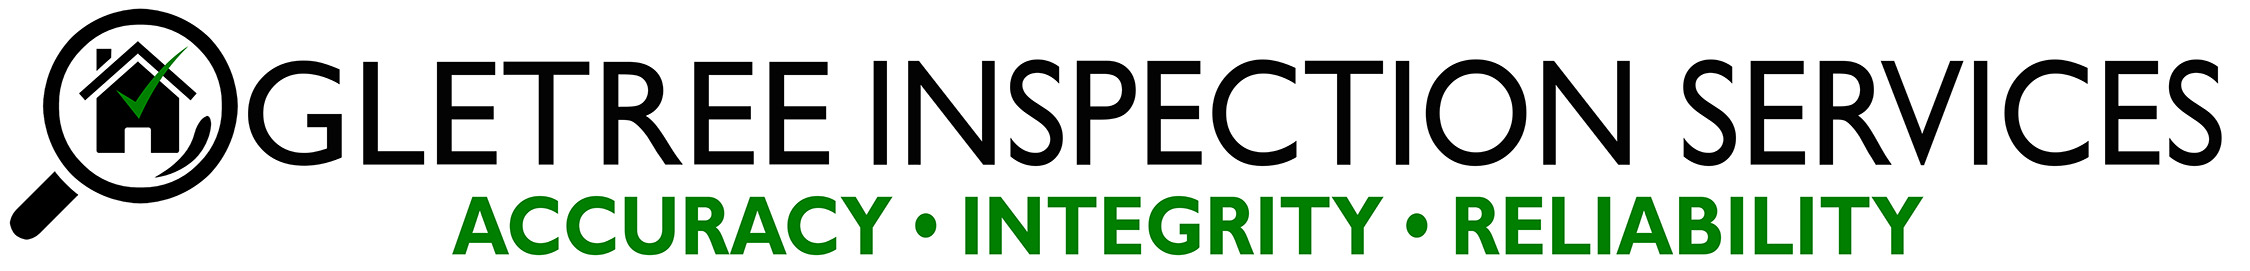 Ogletree Inspection Services Logo